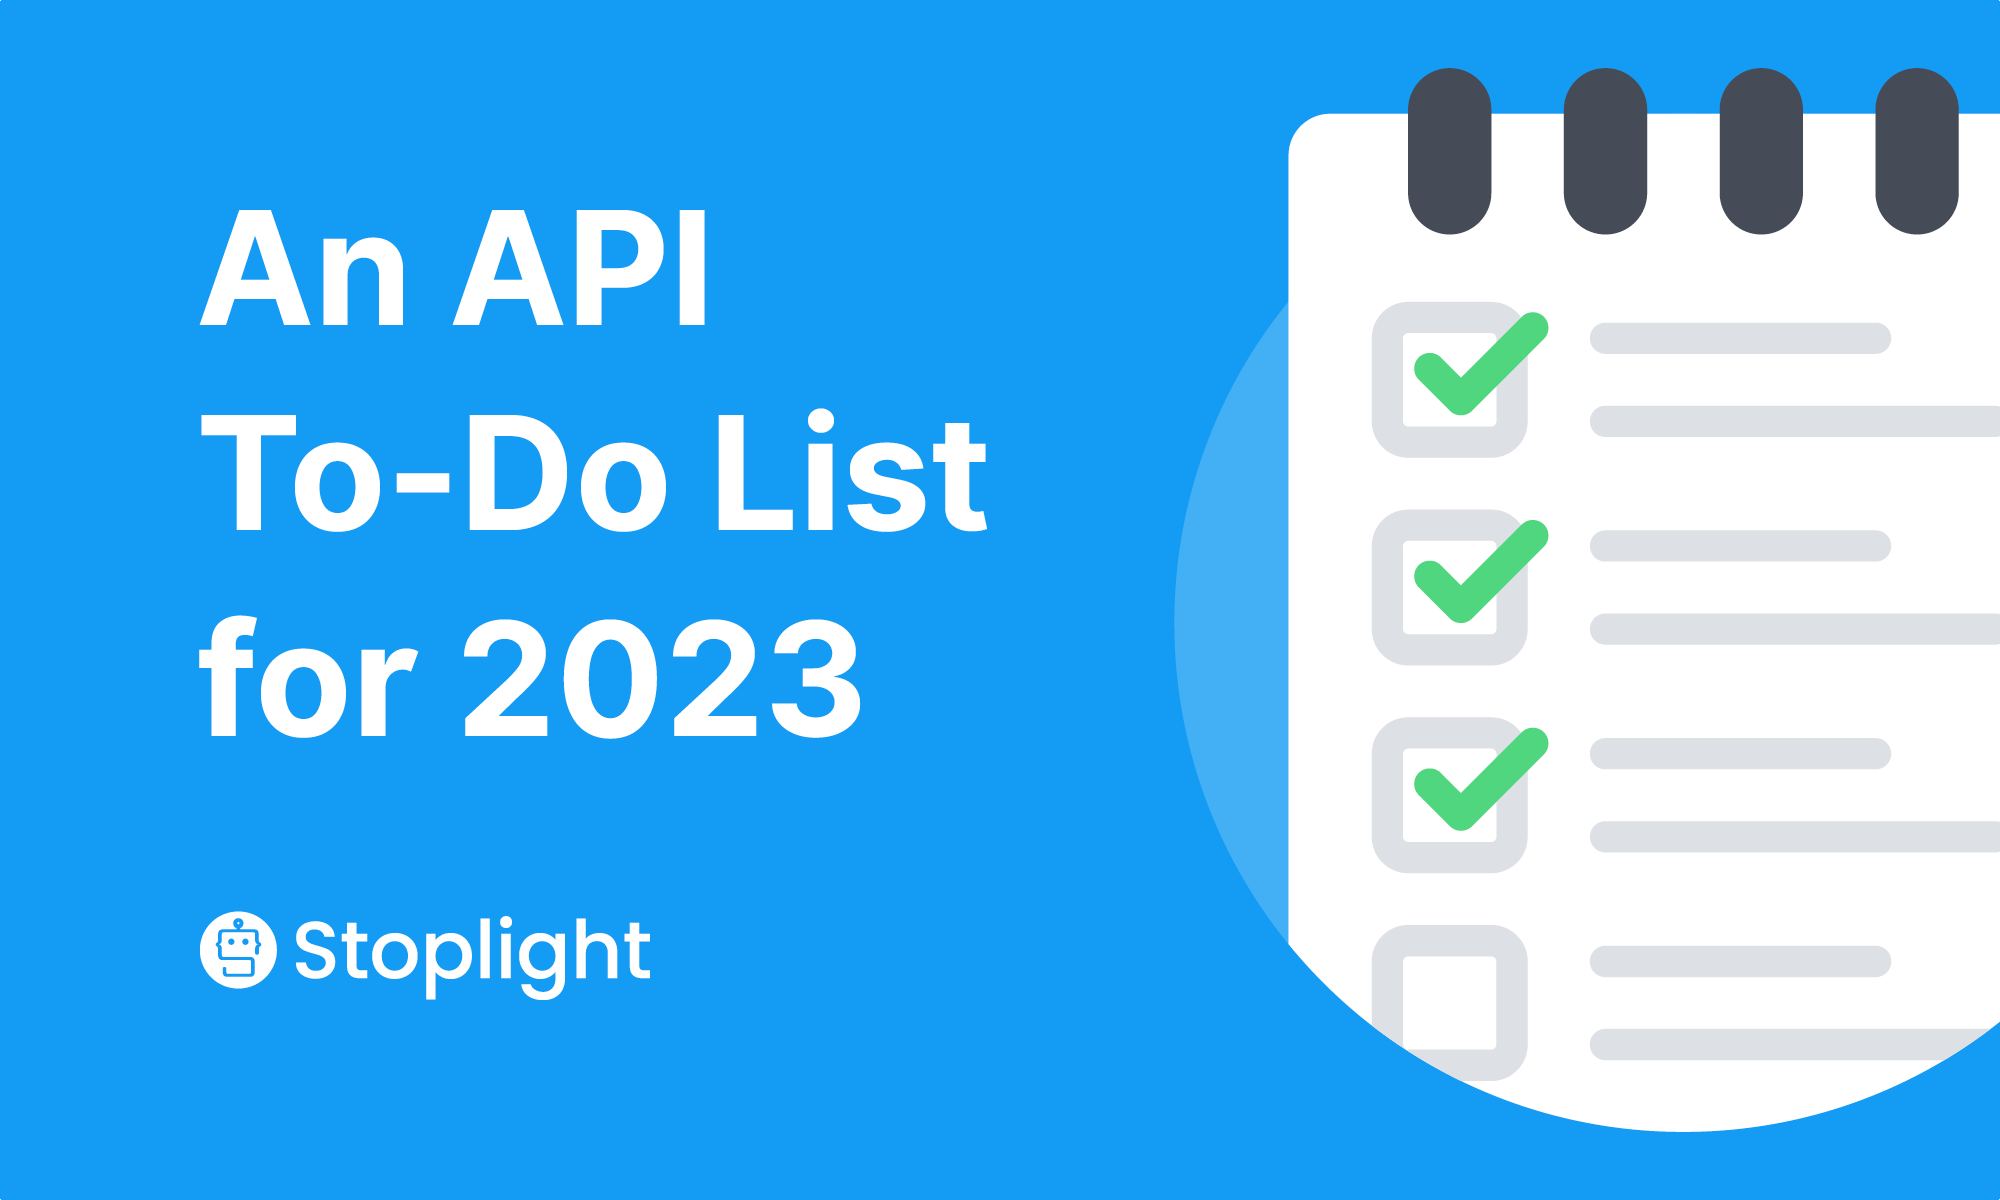 Your API To-Do List for 2023